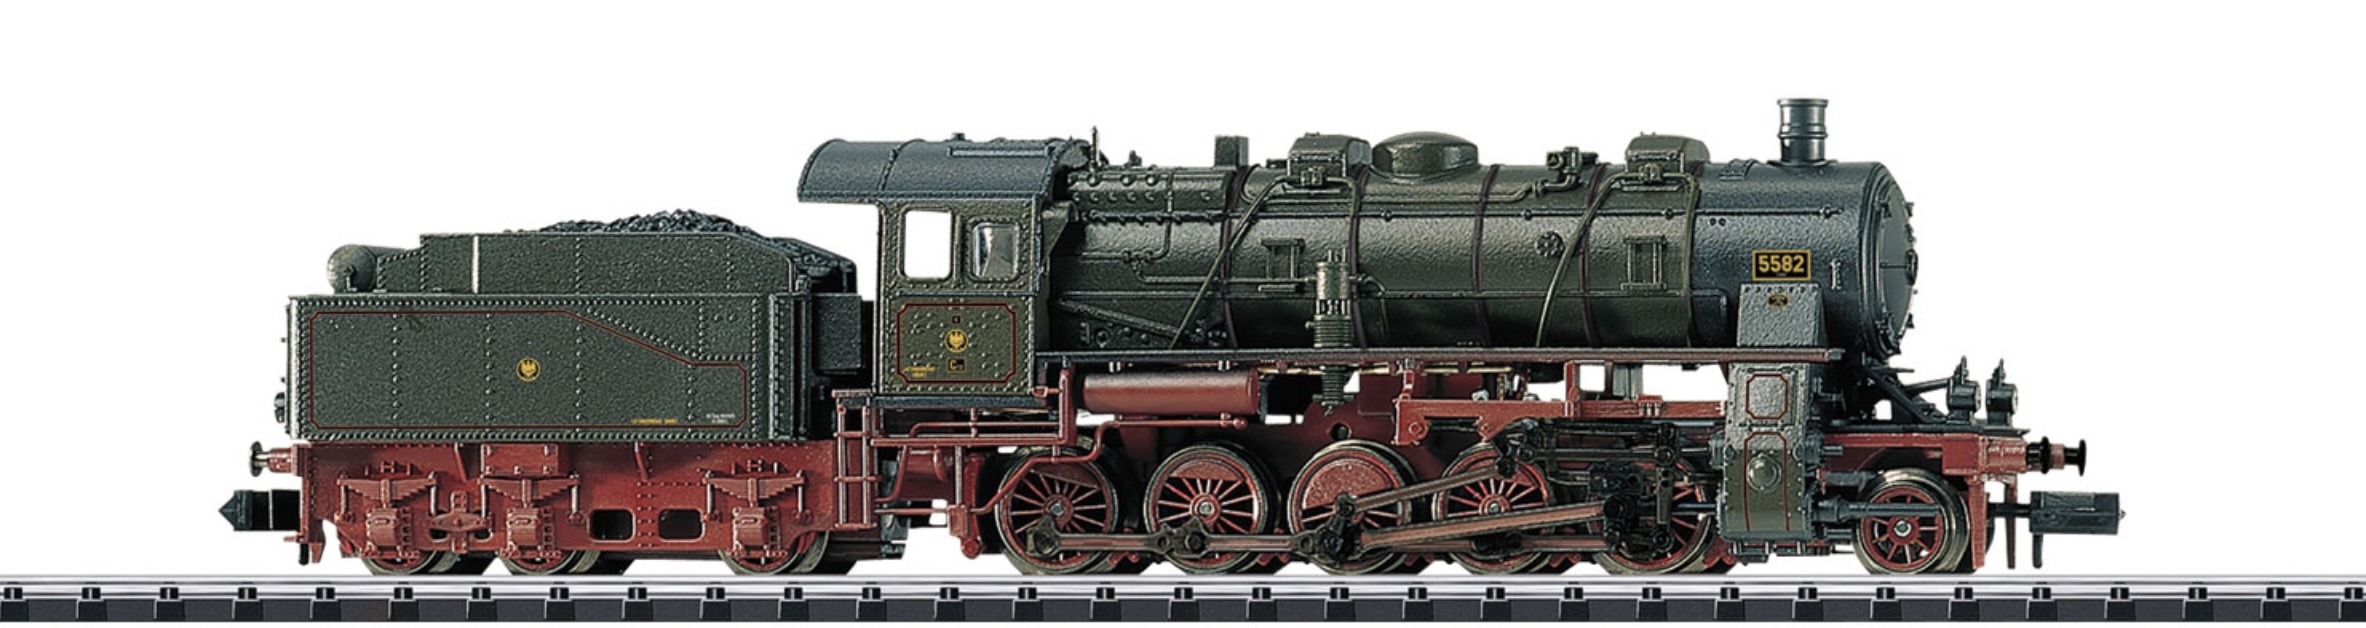 N Scale - Minitrix - 16582 - Locomotive, Steam, 2-10-0 Class 58 - Prussia State (KPEV) - 5582